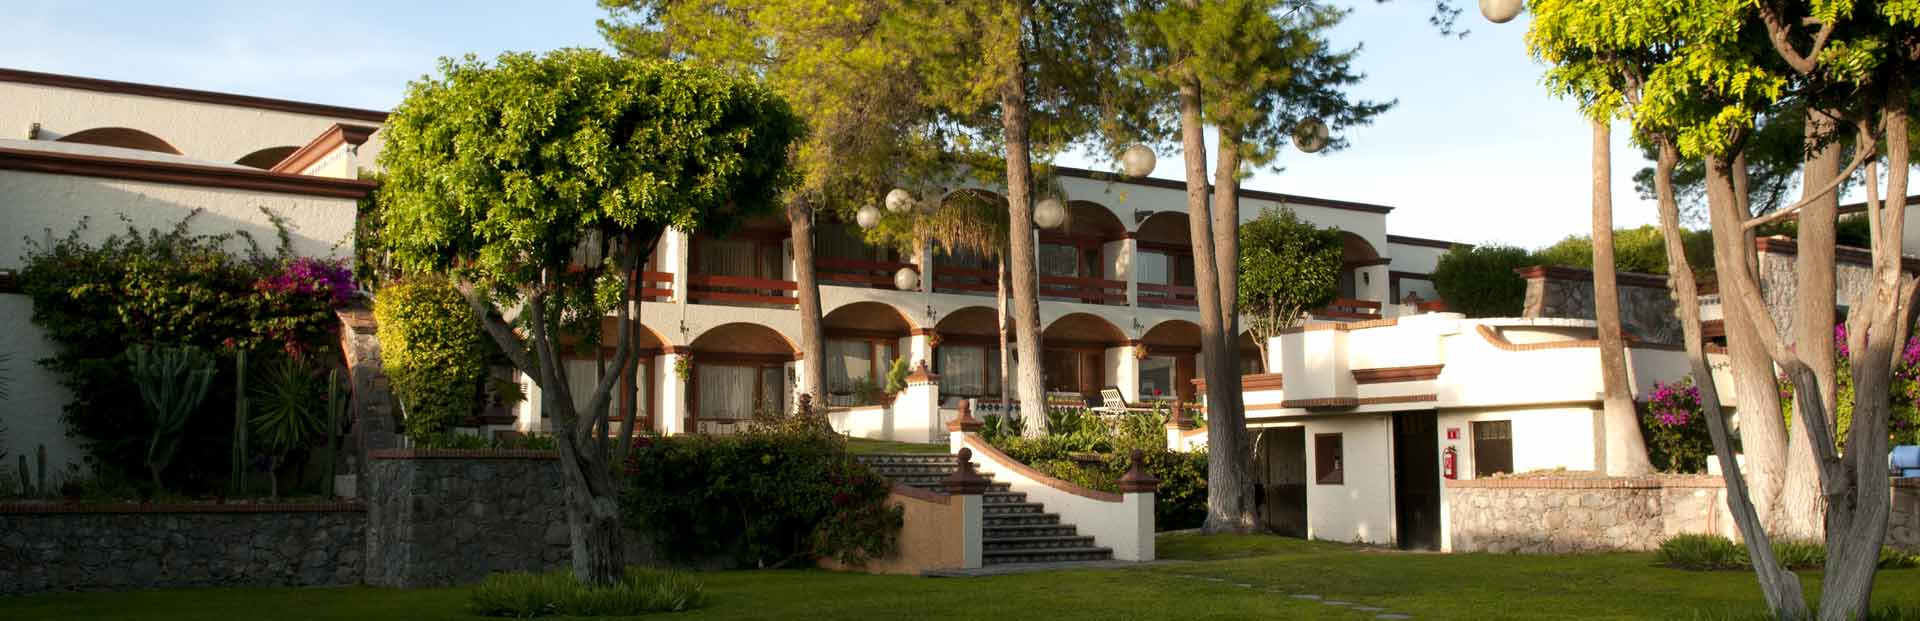 Hospedaje Hotel Imperio de Ángeles San Miguel de Allende